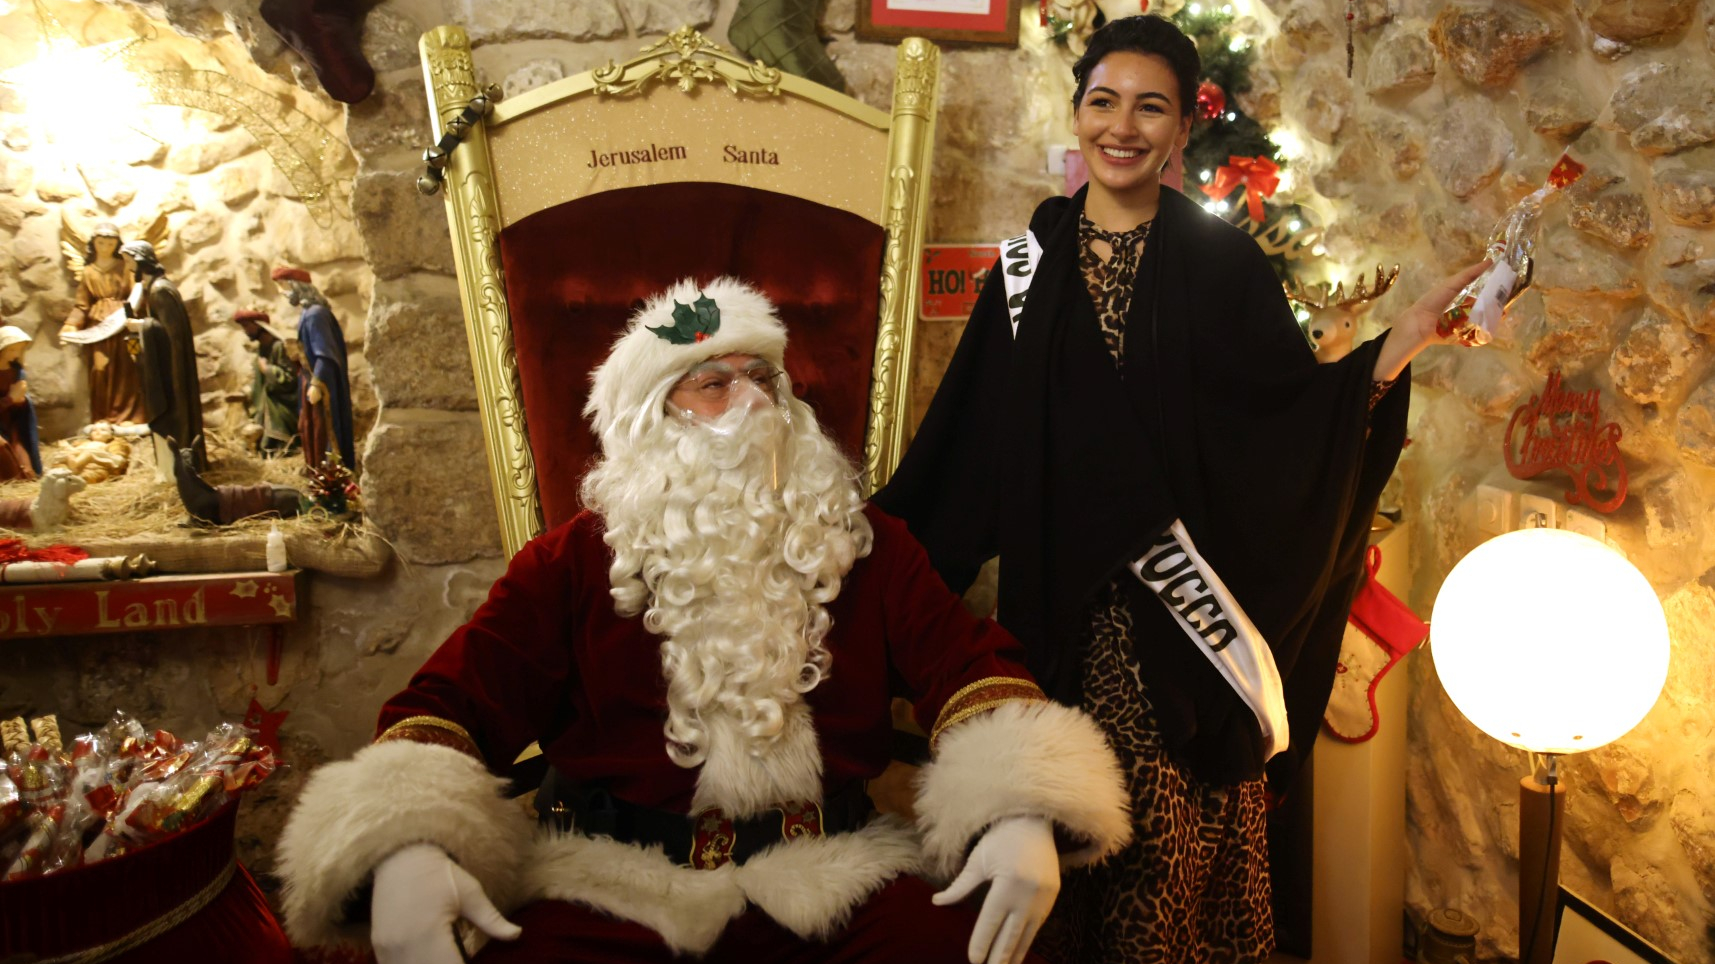 Miss Maroc pose avec un Père Noël lors d'une visite des candidates du concours Miss Univers dans la vieille ville de Jérusalem, en Israël, le 1er décembre 2021, dans le cadre de leur visite de la ville sainte. La 70e édition de Miss Univers se tiendra à Eilat, le 12 décembre.
